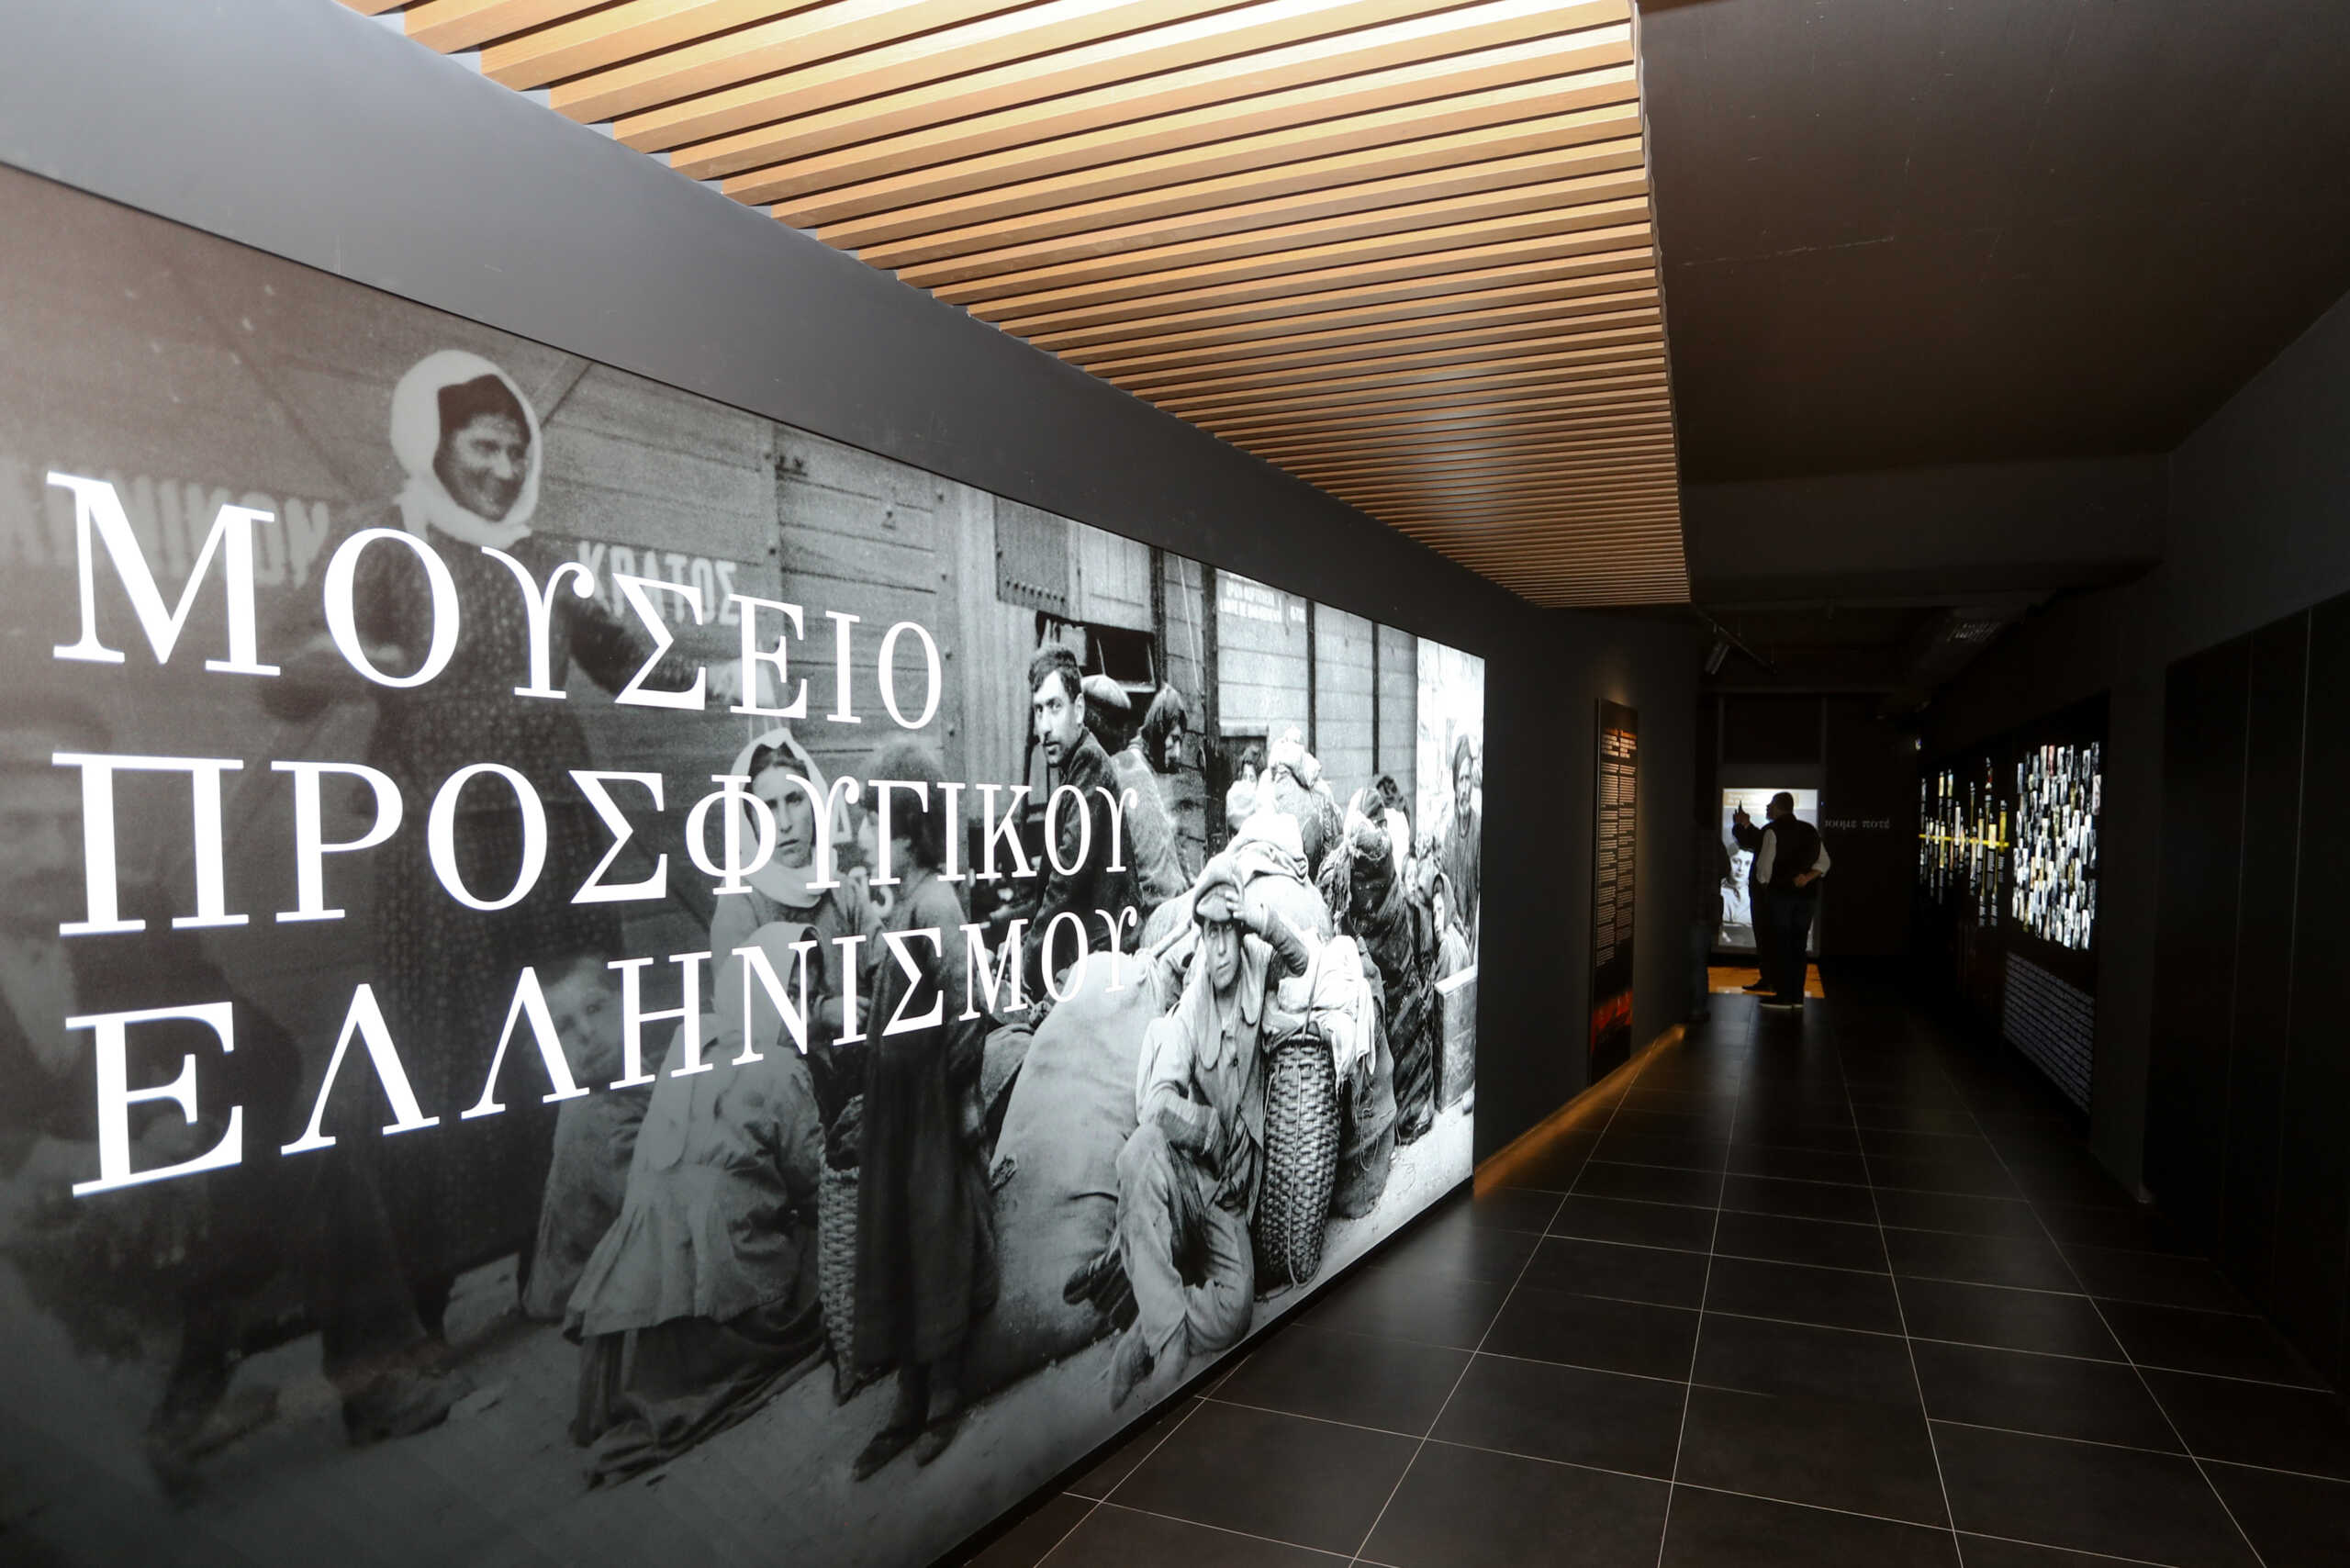 Μουσείο Προσφυγικού Ελληνισμού: Η ενημέρωση της ΑΕΚ για το πότε θα λειτουργήσει για το κοινό